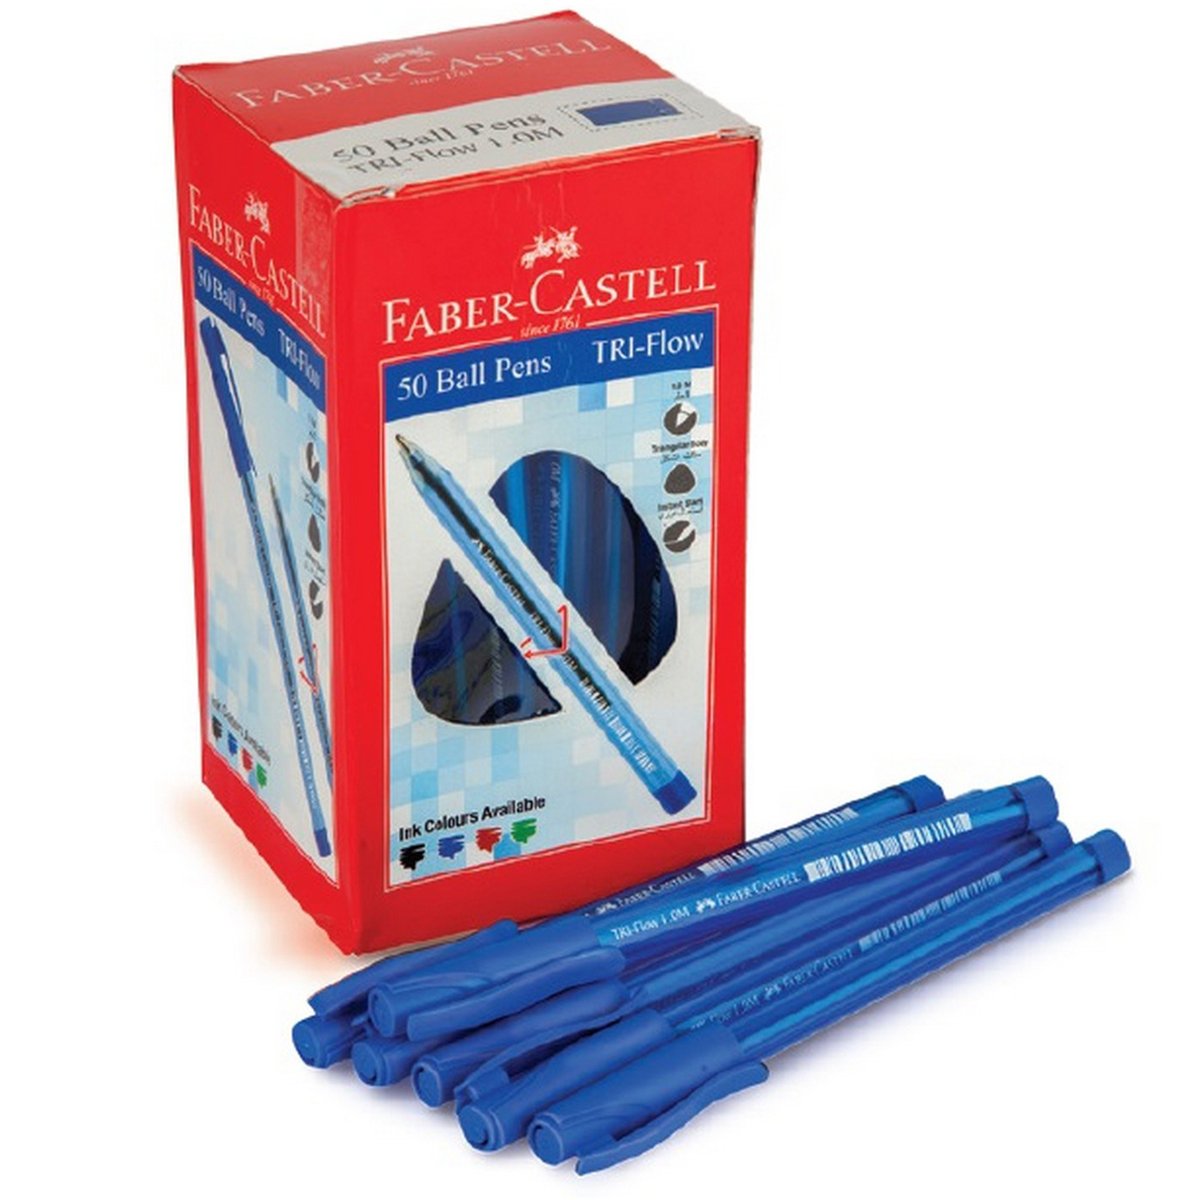 Faber-Castell Ball Pen 50 Pieces